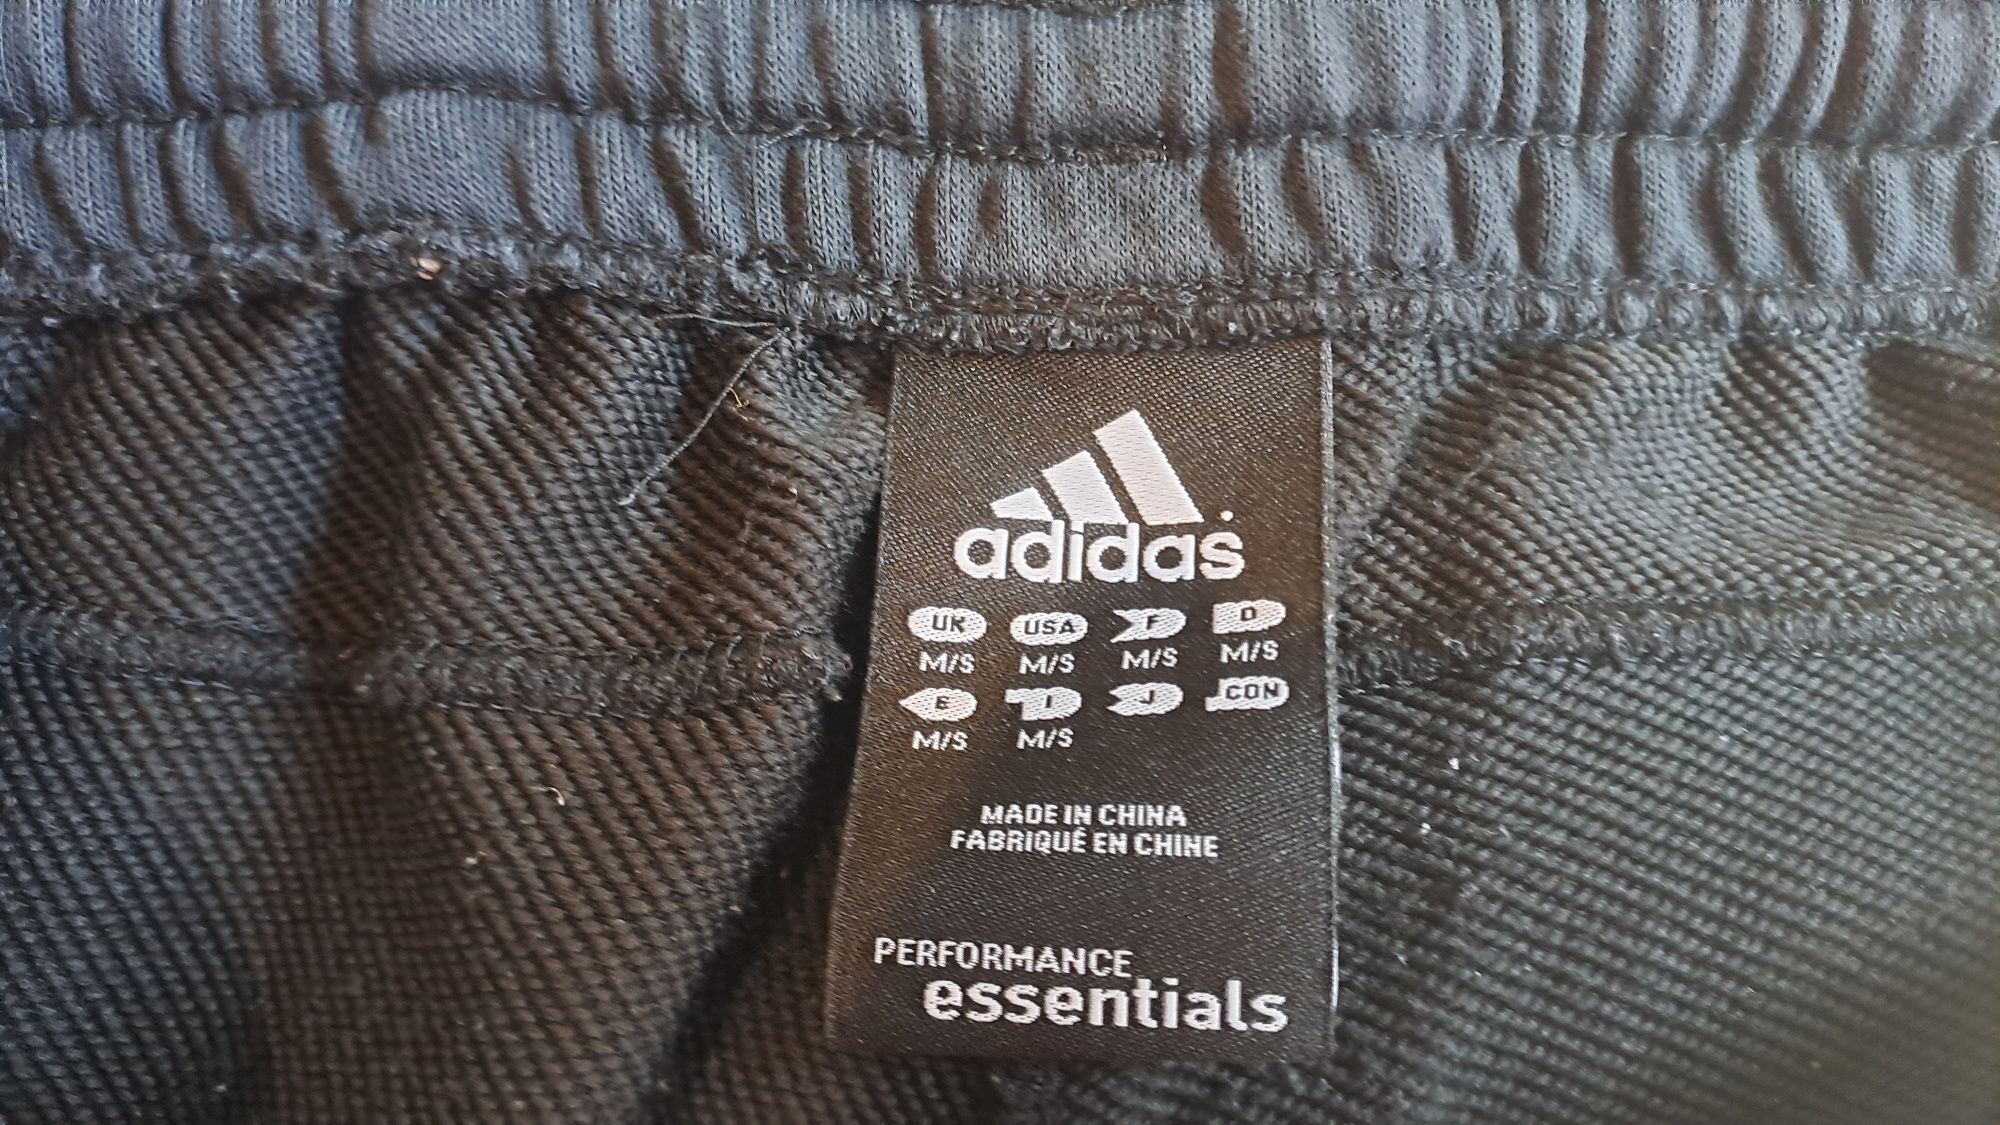 Adidas spodnie ciemno geanatowe, stan bdb, jak nowe, r:M/S.